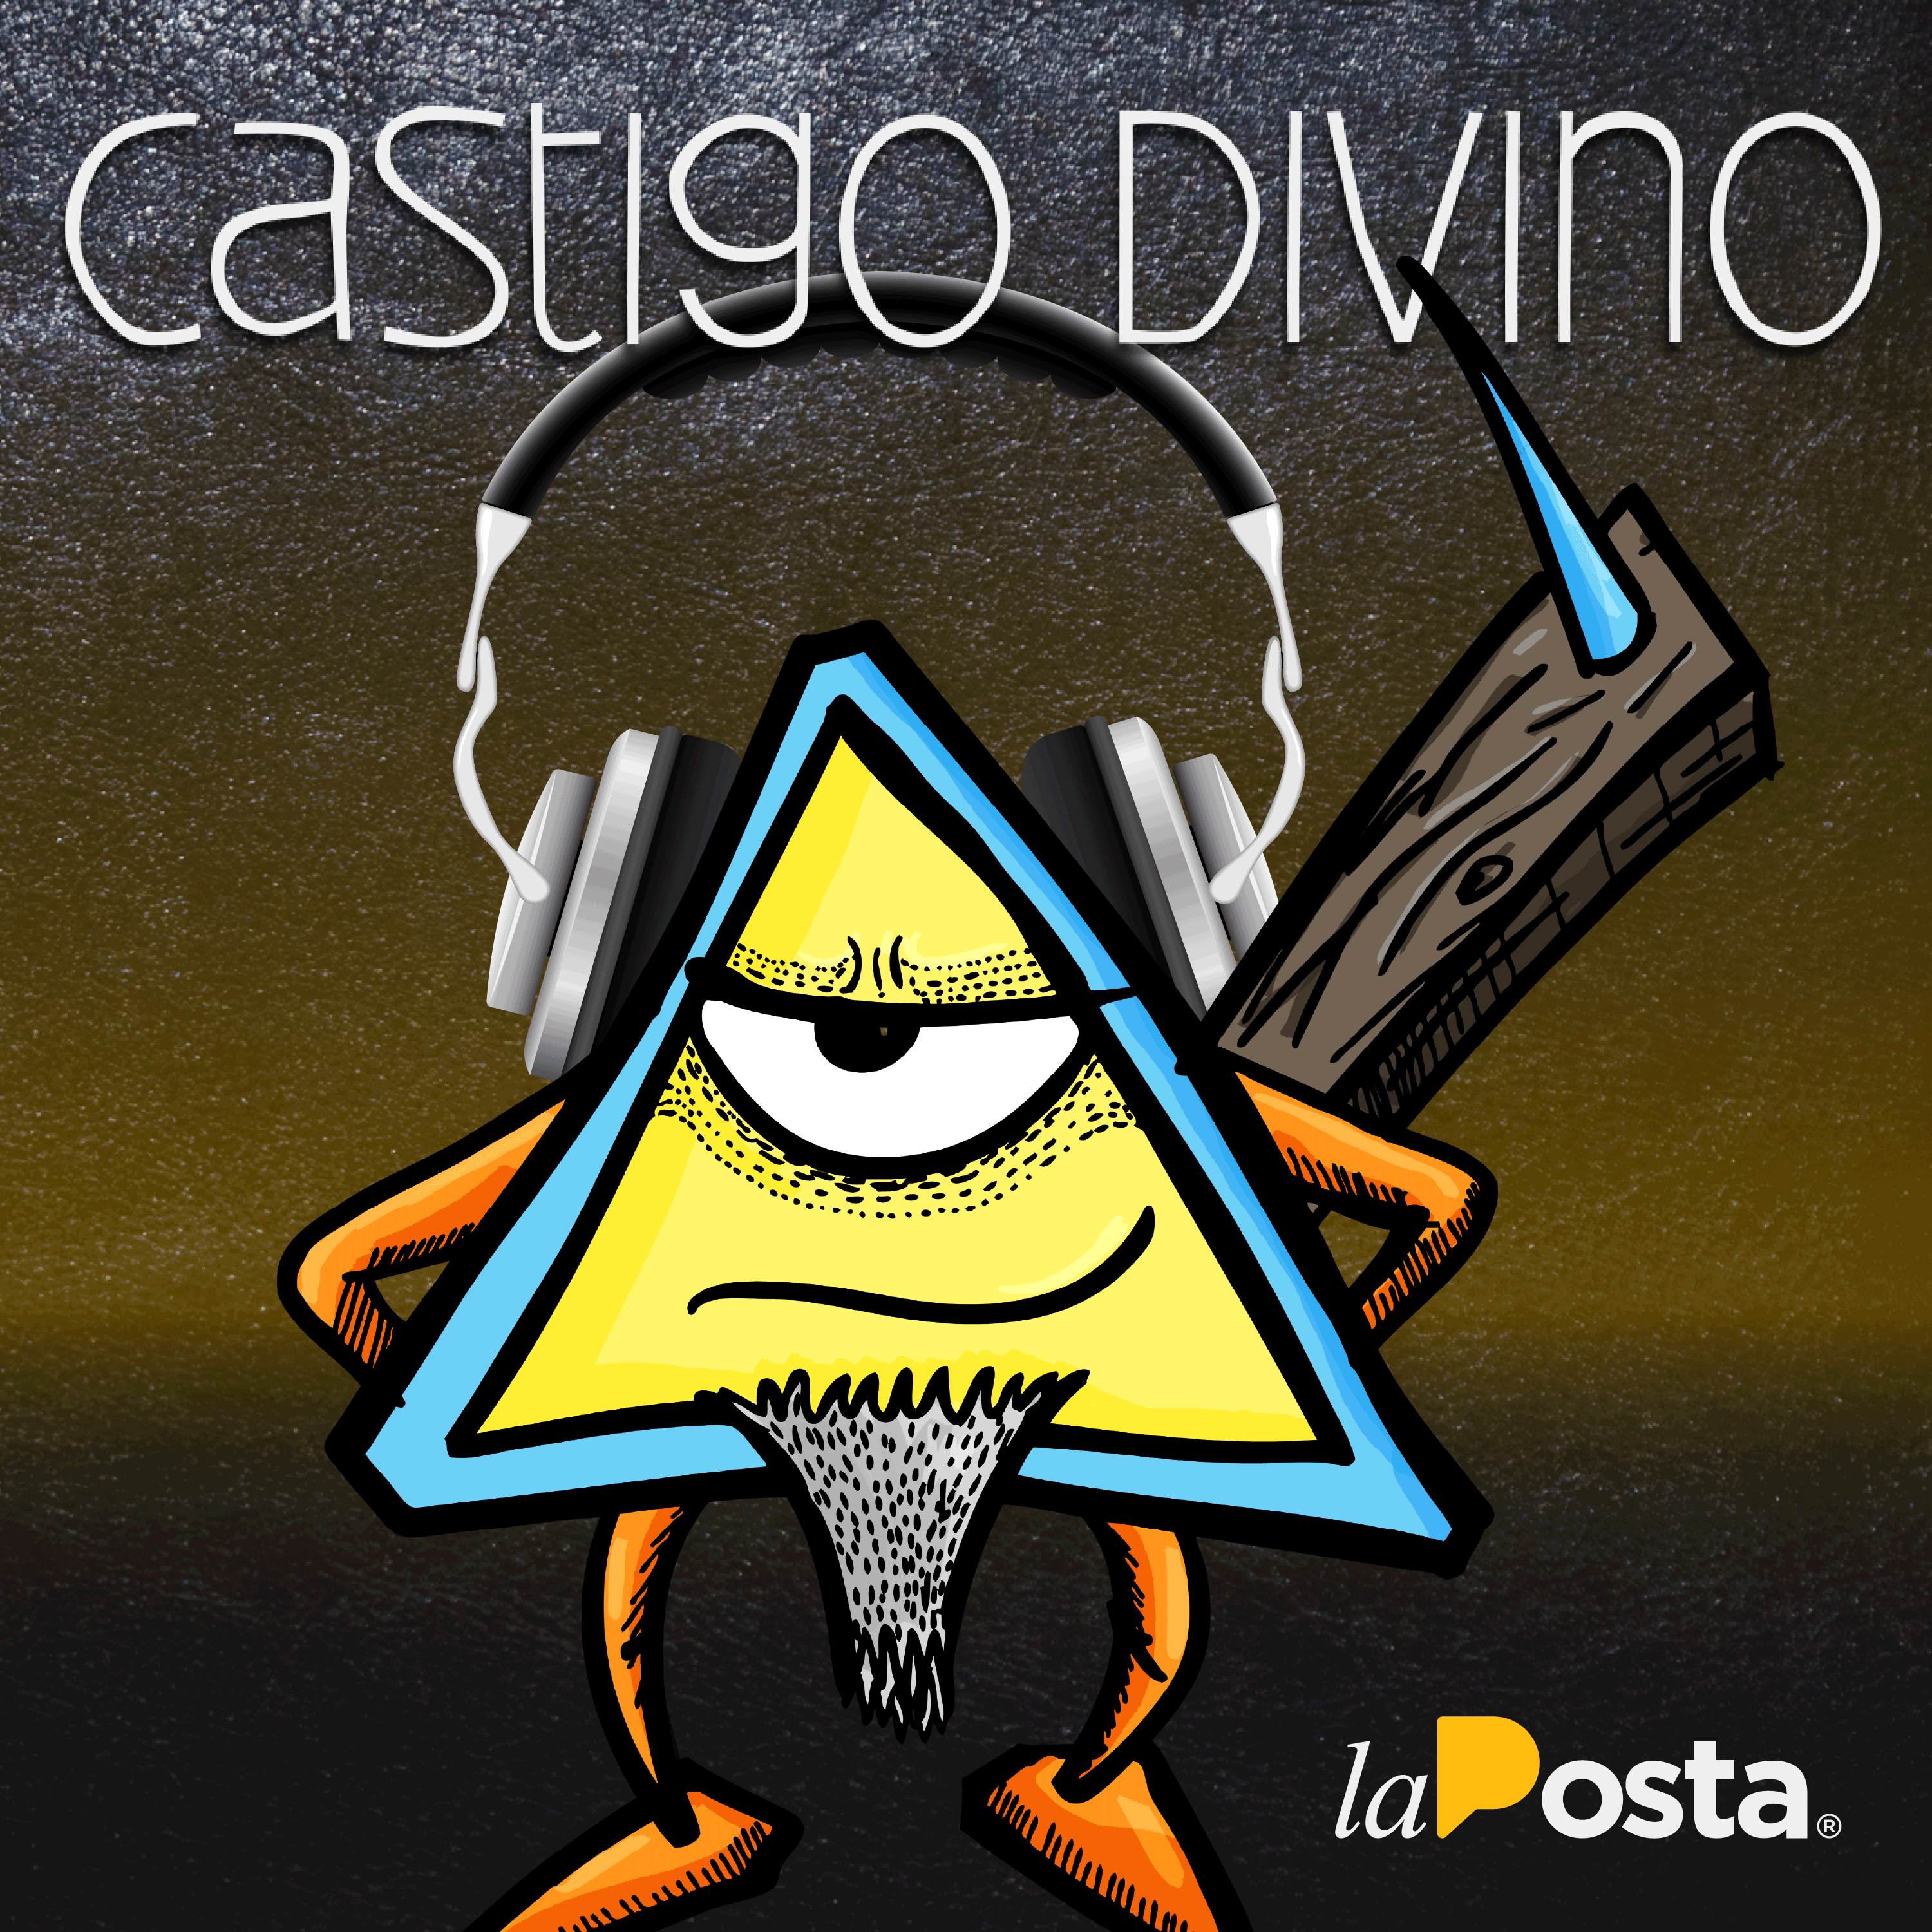 Show artwork for Castigo Divino